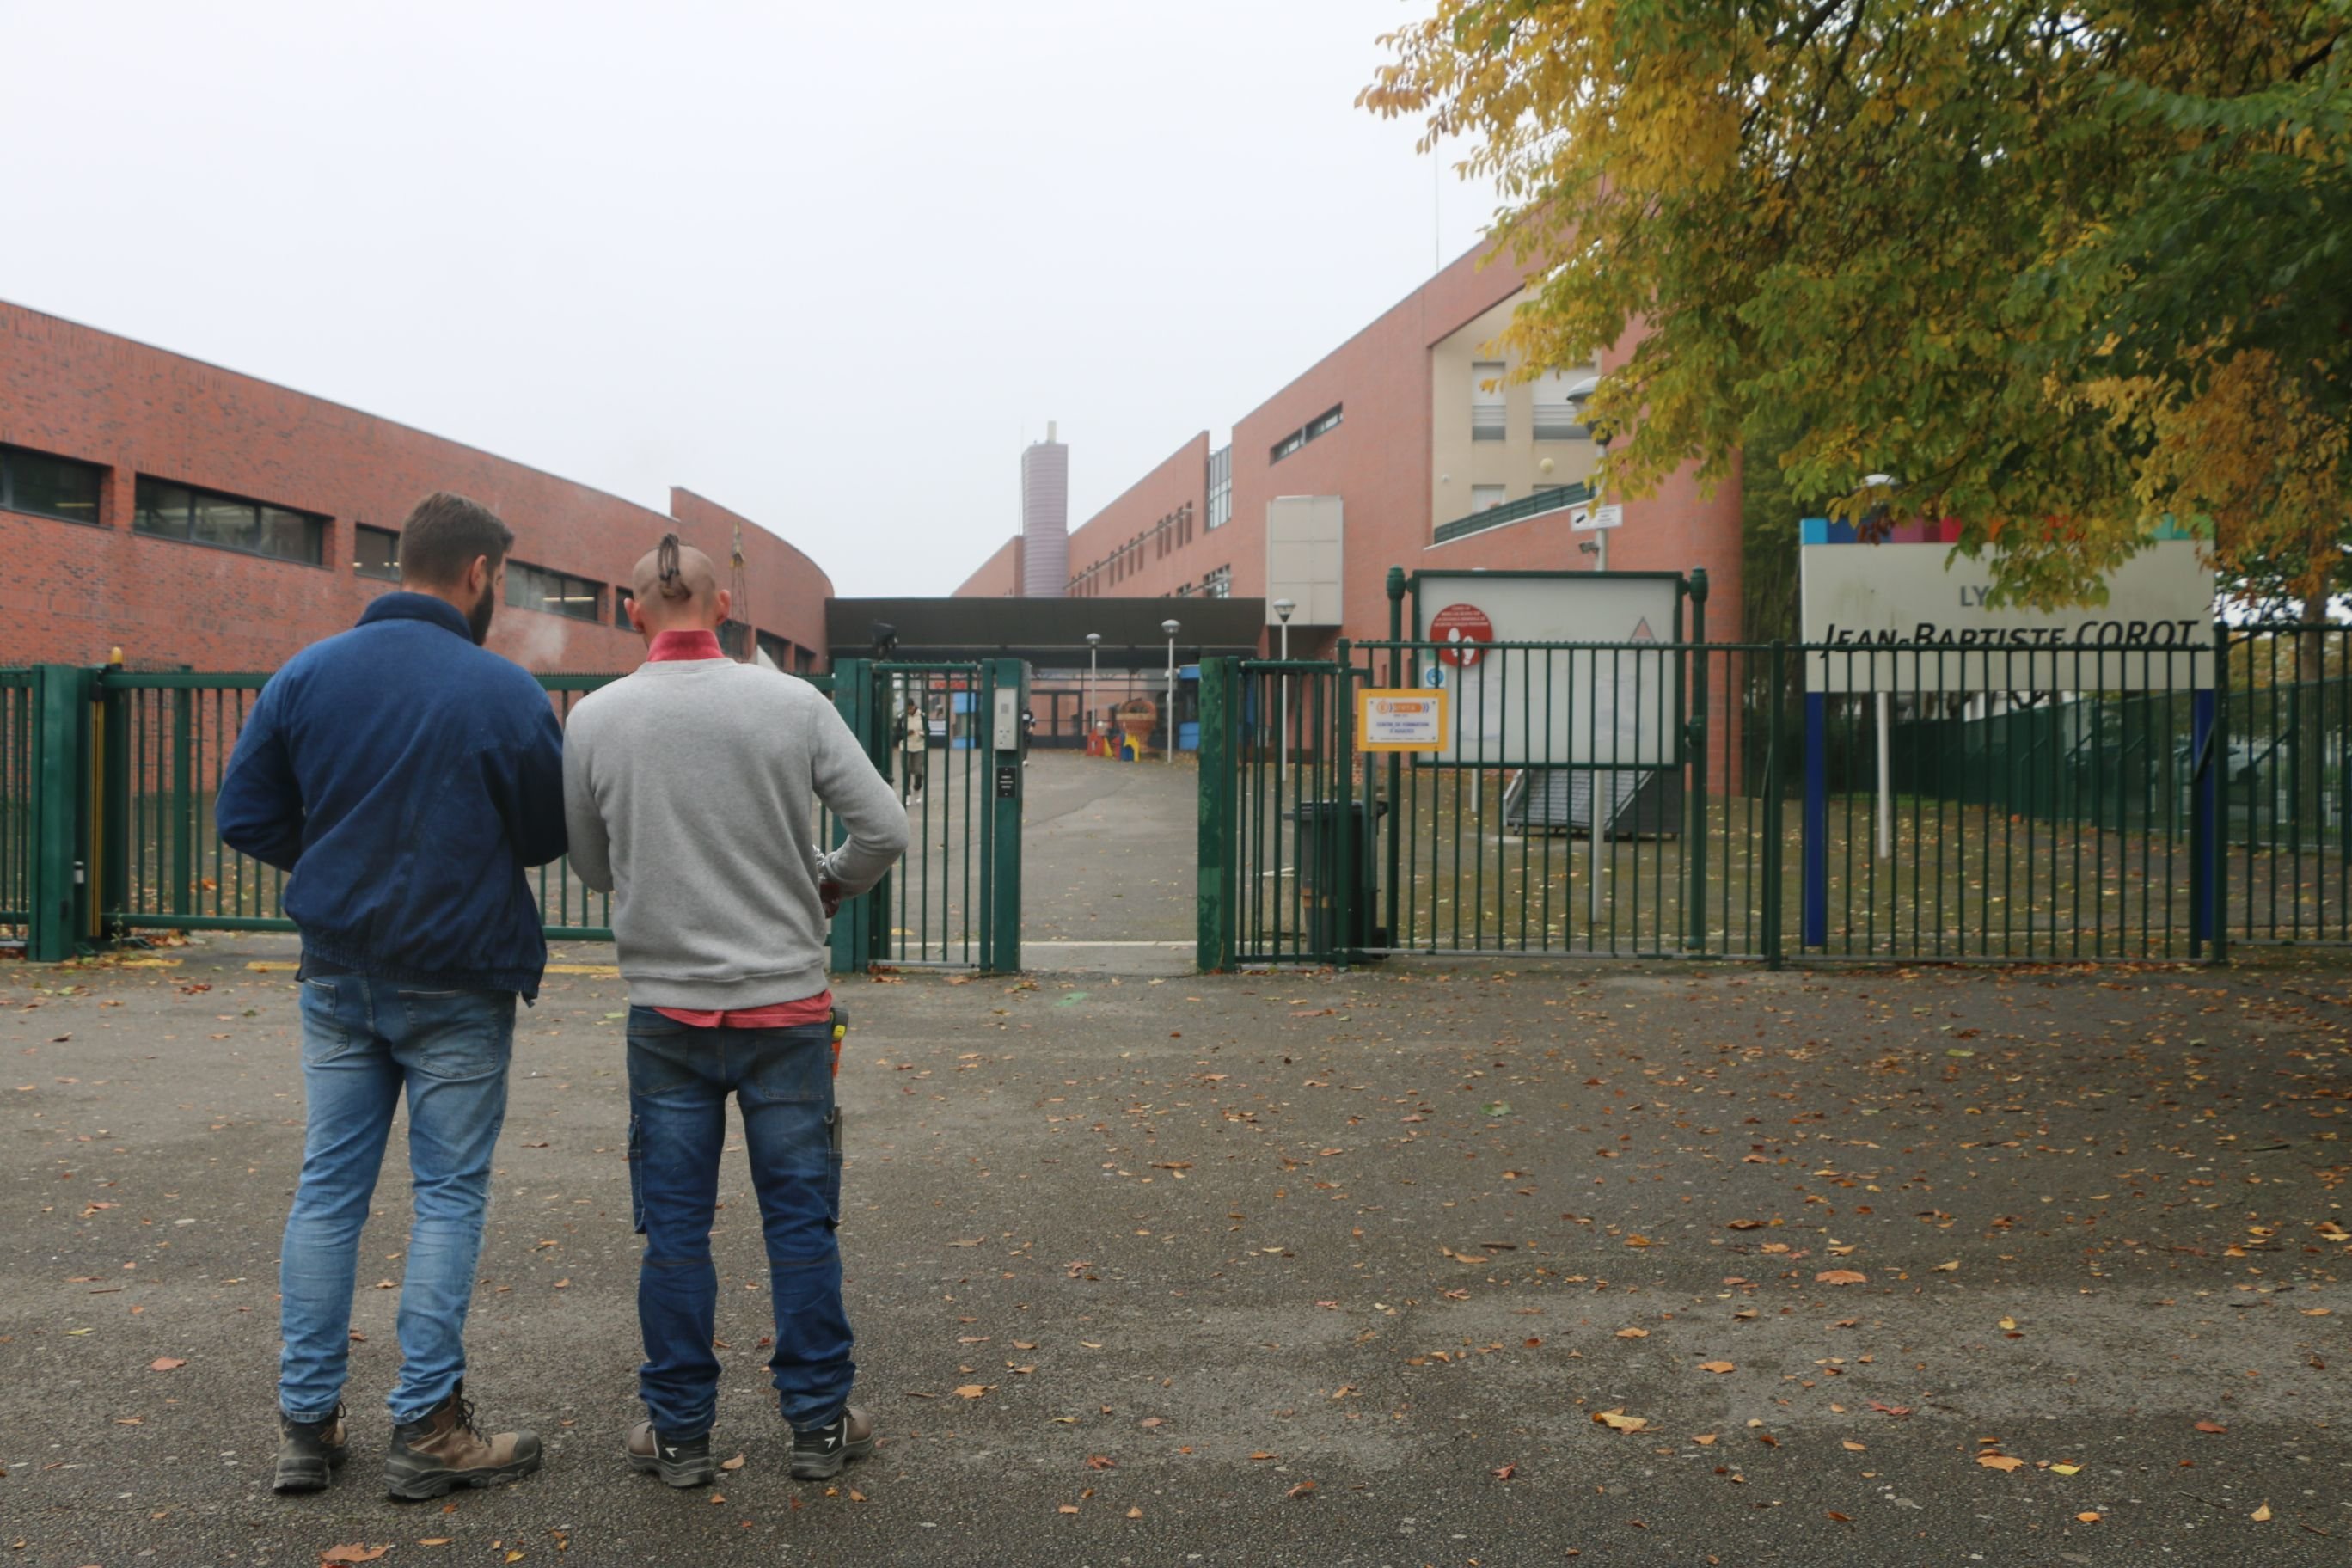 Lycée professionnel Jean-Baptiste-Corot de Beauvais (Oise), ce lundi. Environ 70 enseignants sont en grève depuis une semaine. LP/Juliette Duclos